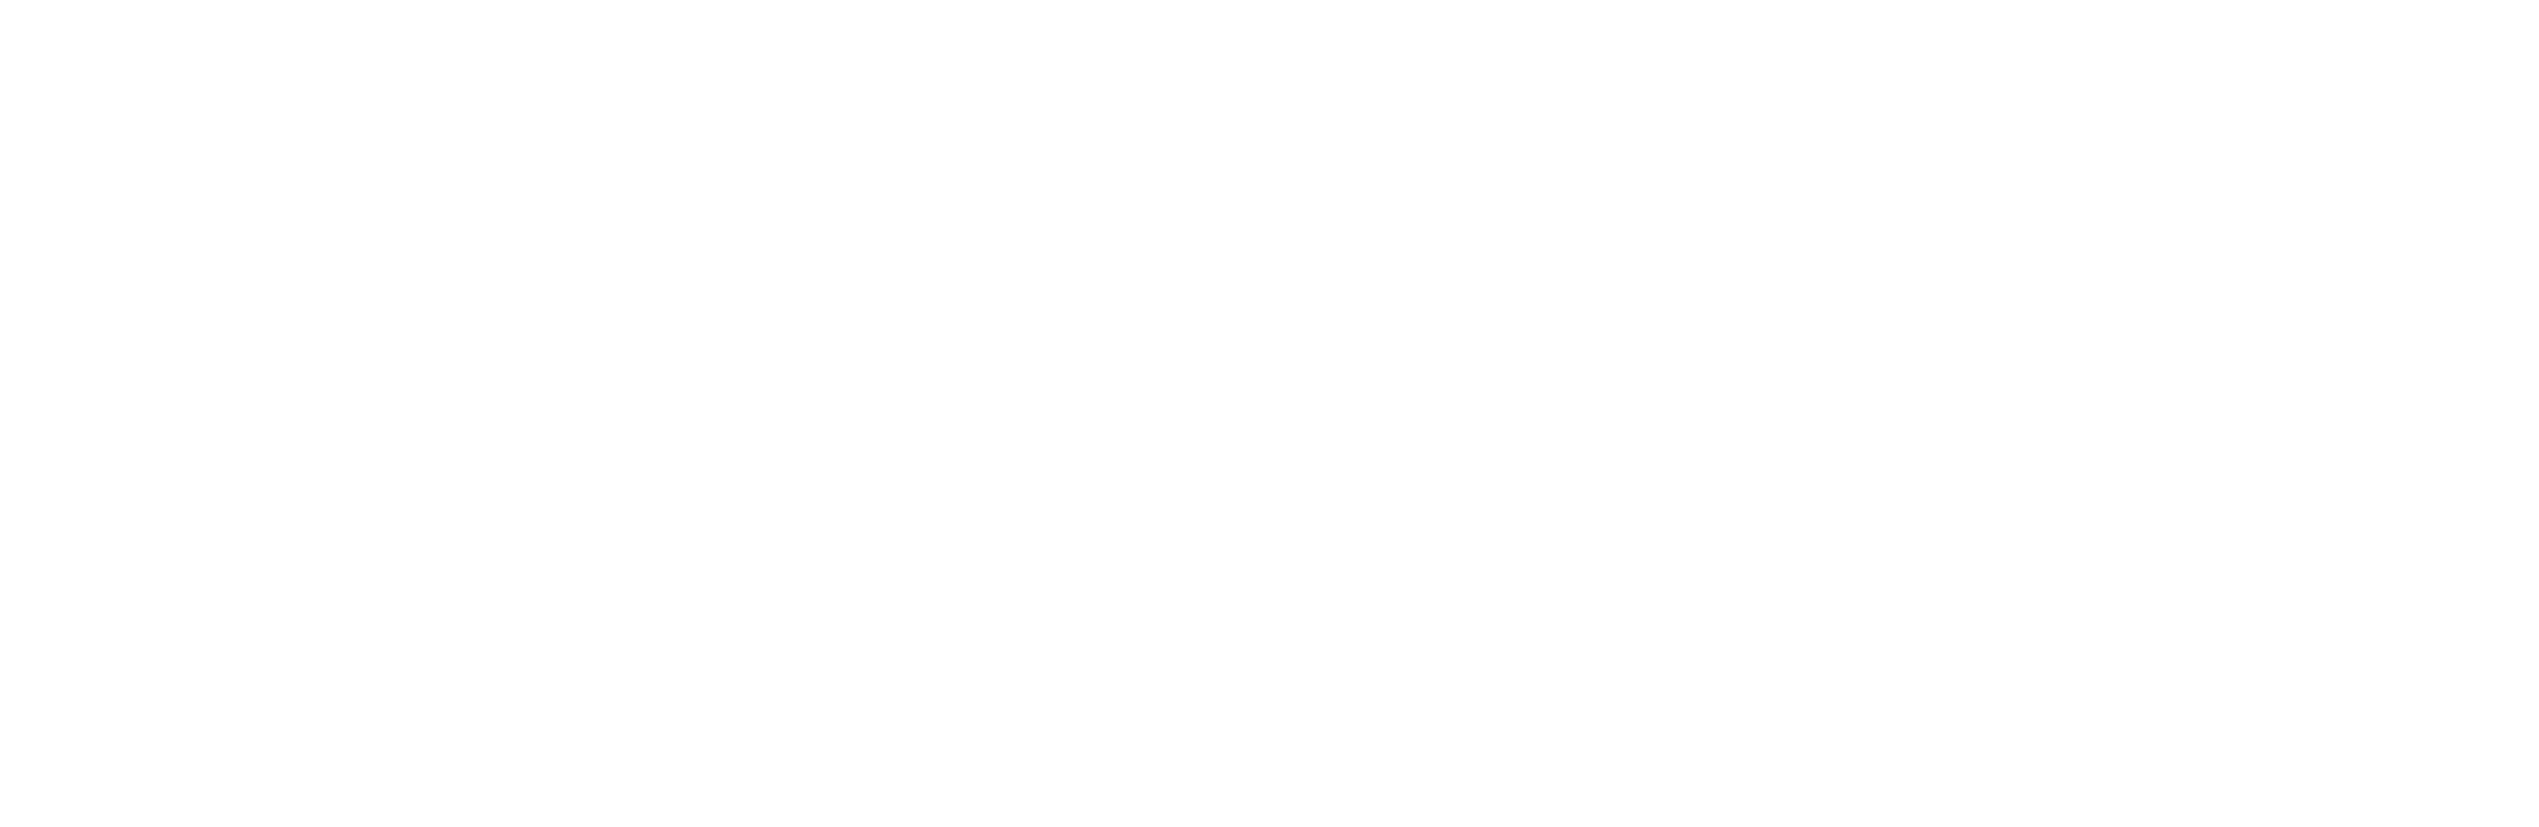 The Arts Society